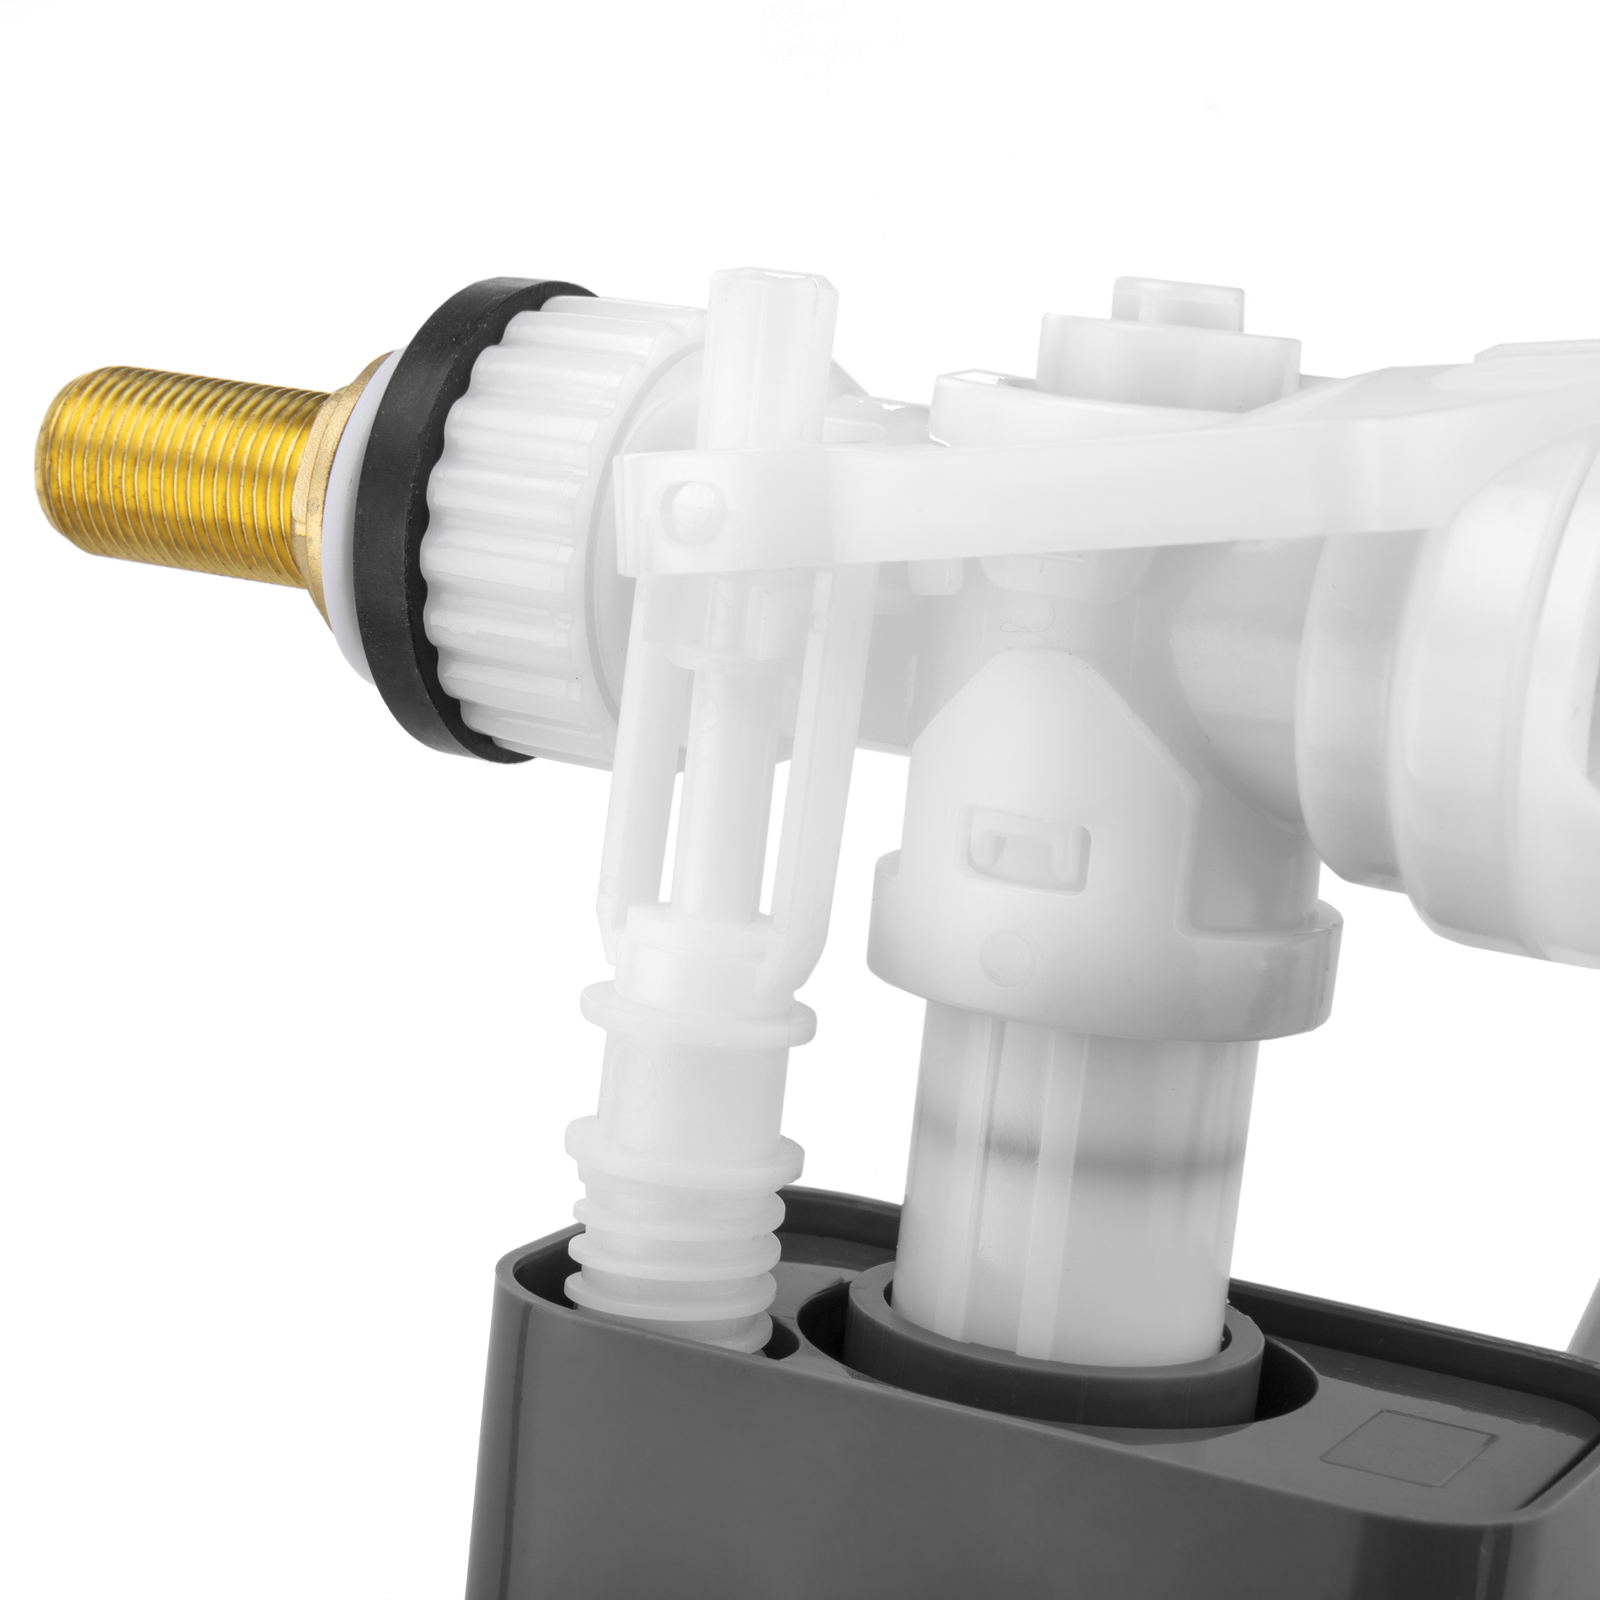 Válvula de llenado lateral de cisterna wc Gala original. Grifo flotador  mecanismo universal de alimentación horizontal compatible con Roca y otras  marcas